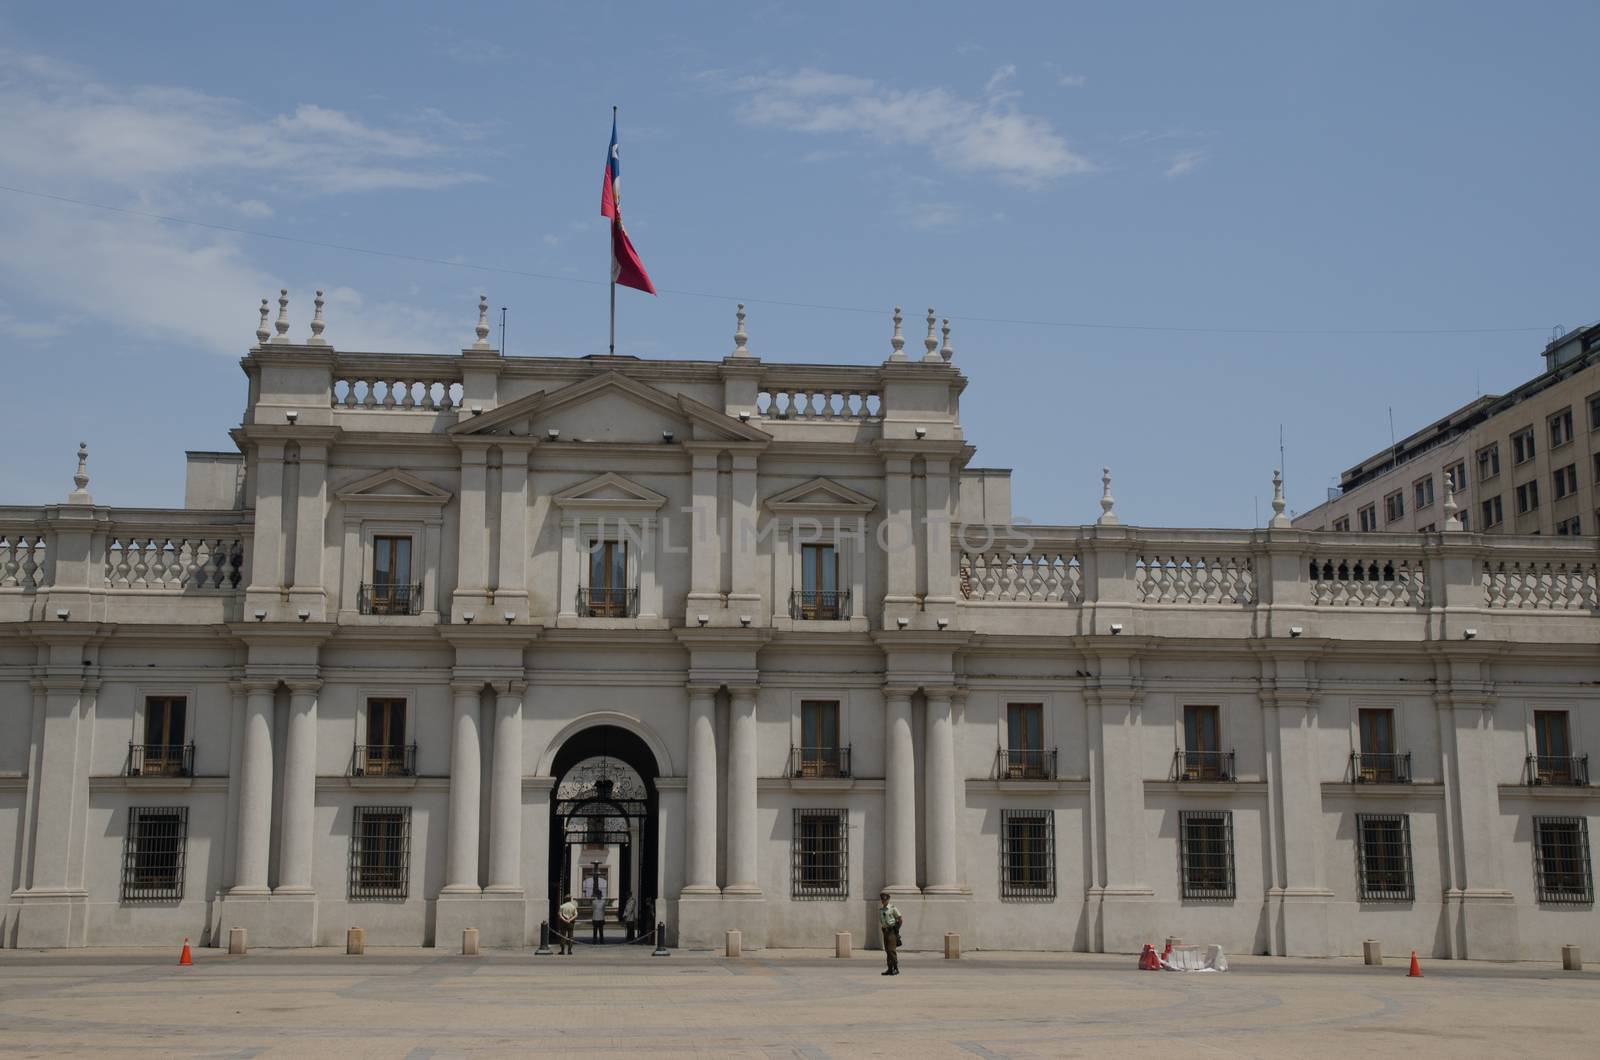 La Moneda Palace in the The Constitution Square. by VictorSuarez